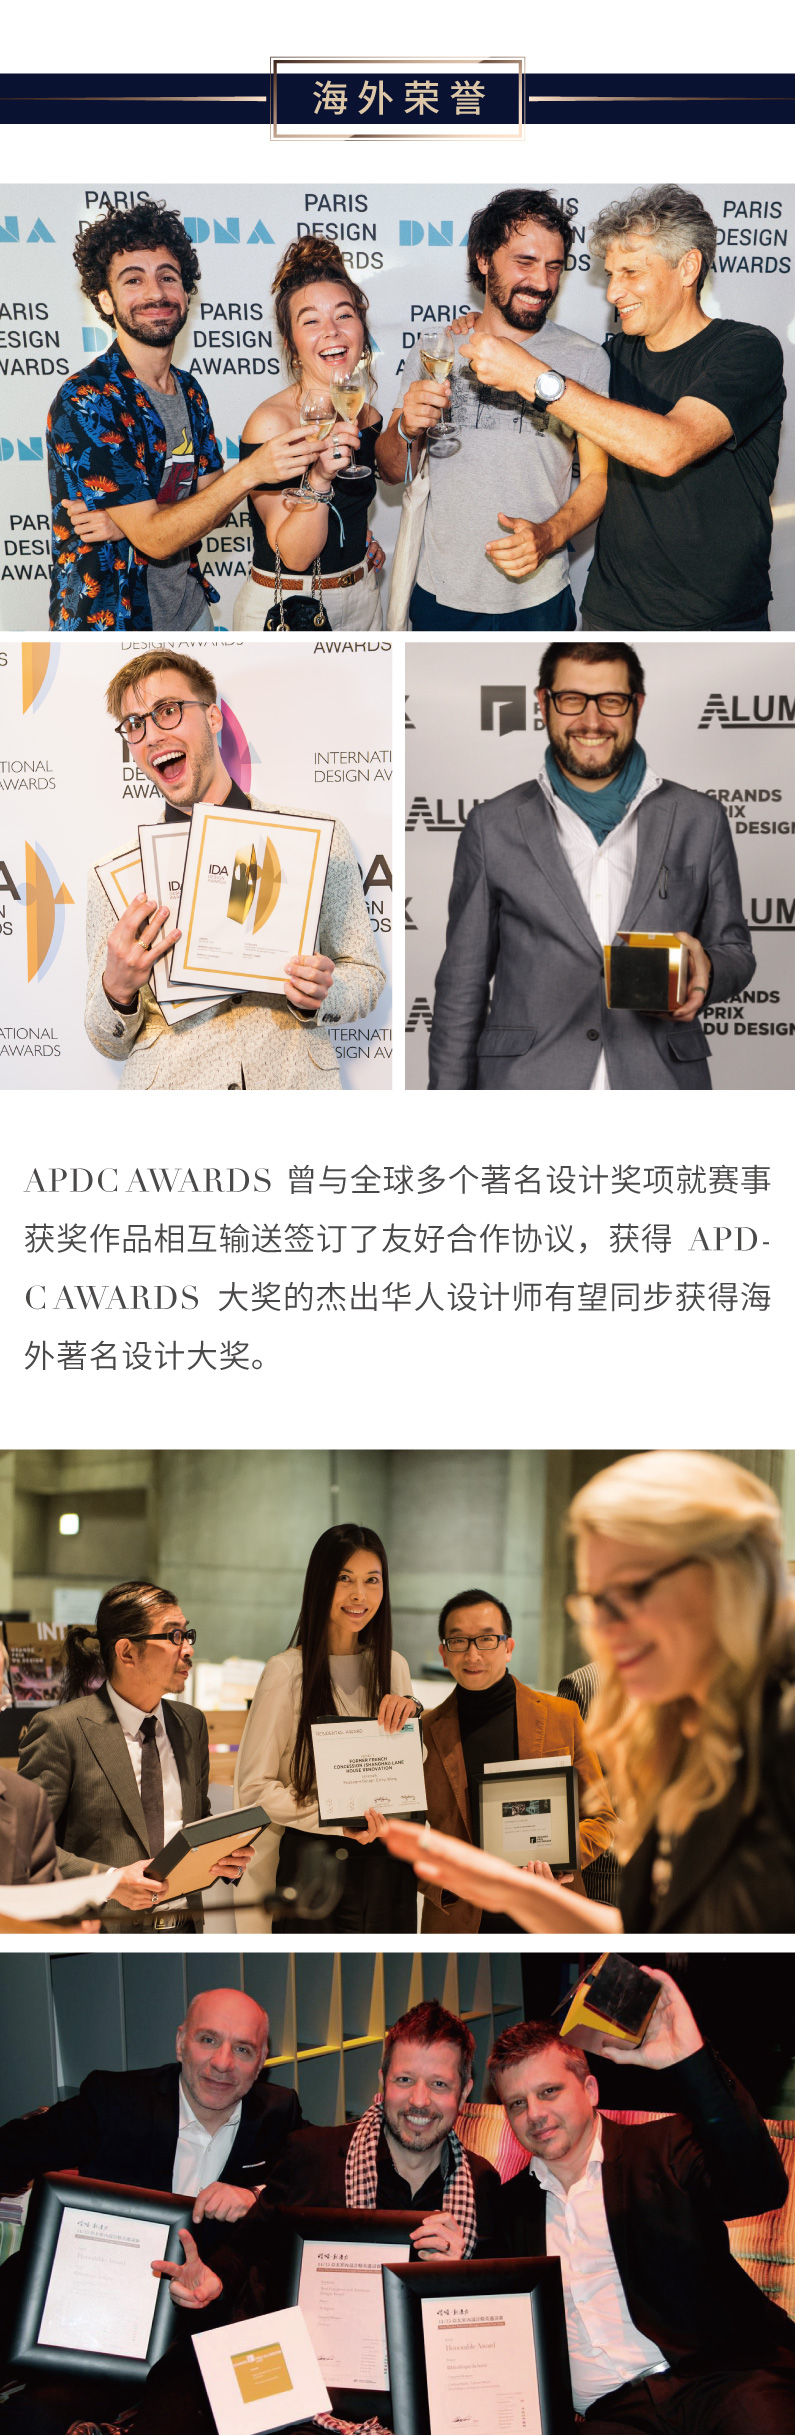 中文版-2022APDC AWARDS 赛事介绍_画板 1 副本 12.jpg